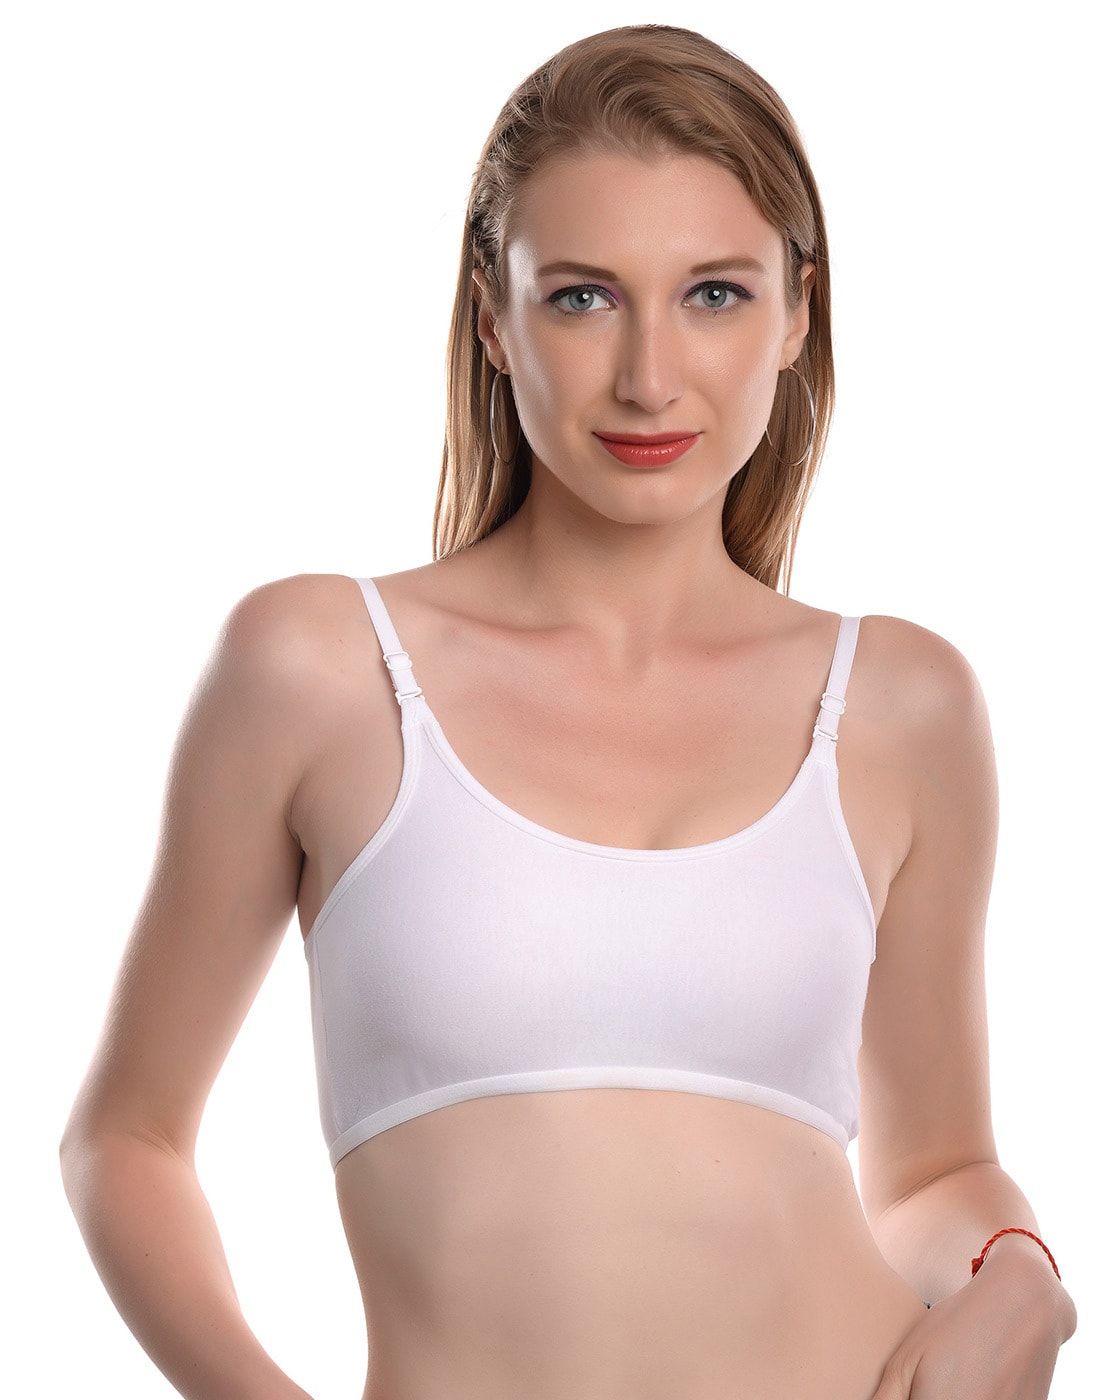 Buy White Bras for Women by VIRAL GIRL Online